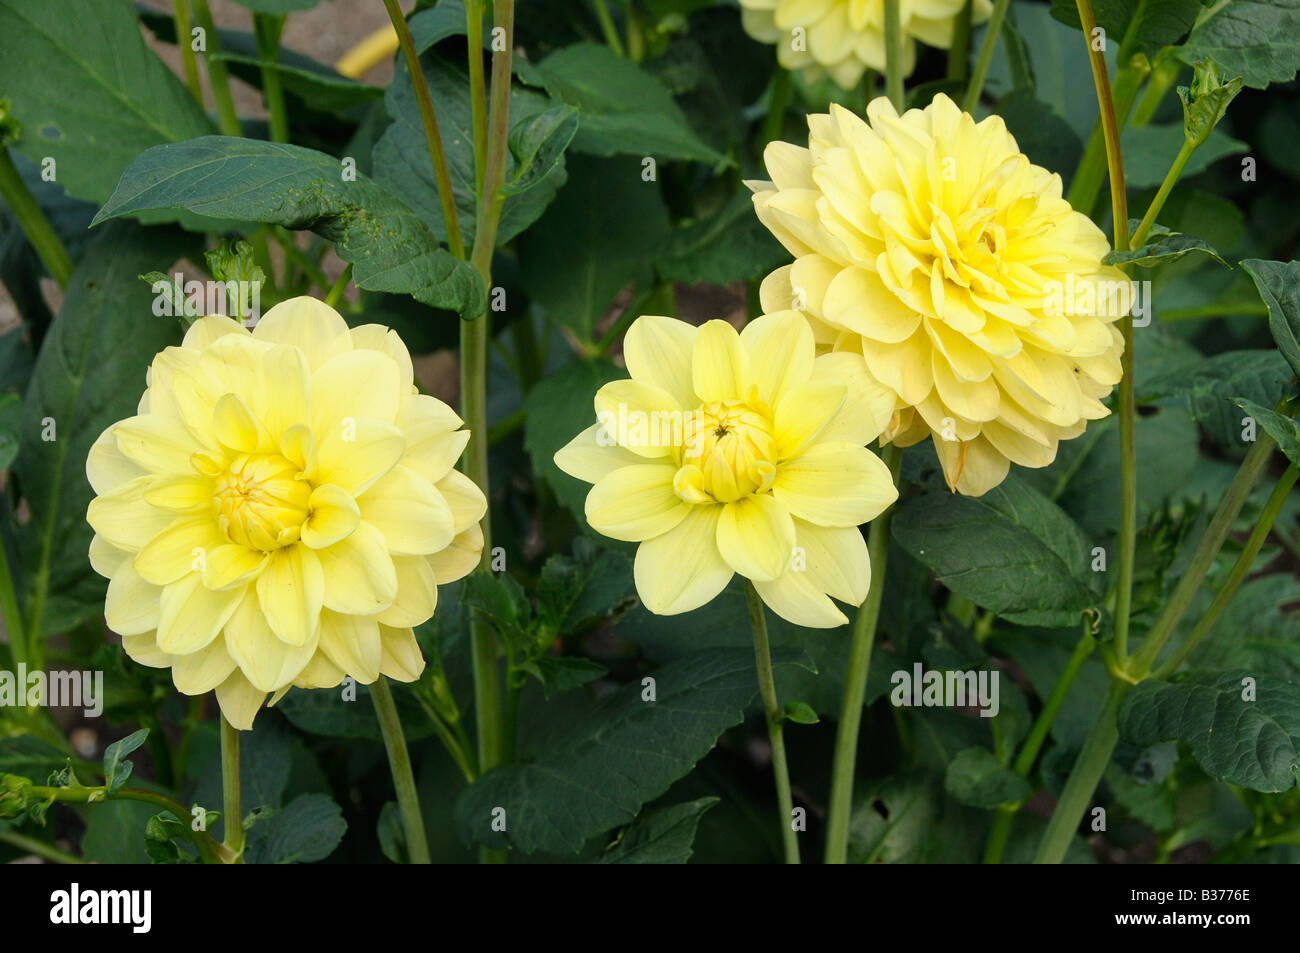 Dahlia Glory Van heemstede flowering in summer UK July Stock Photo